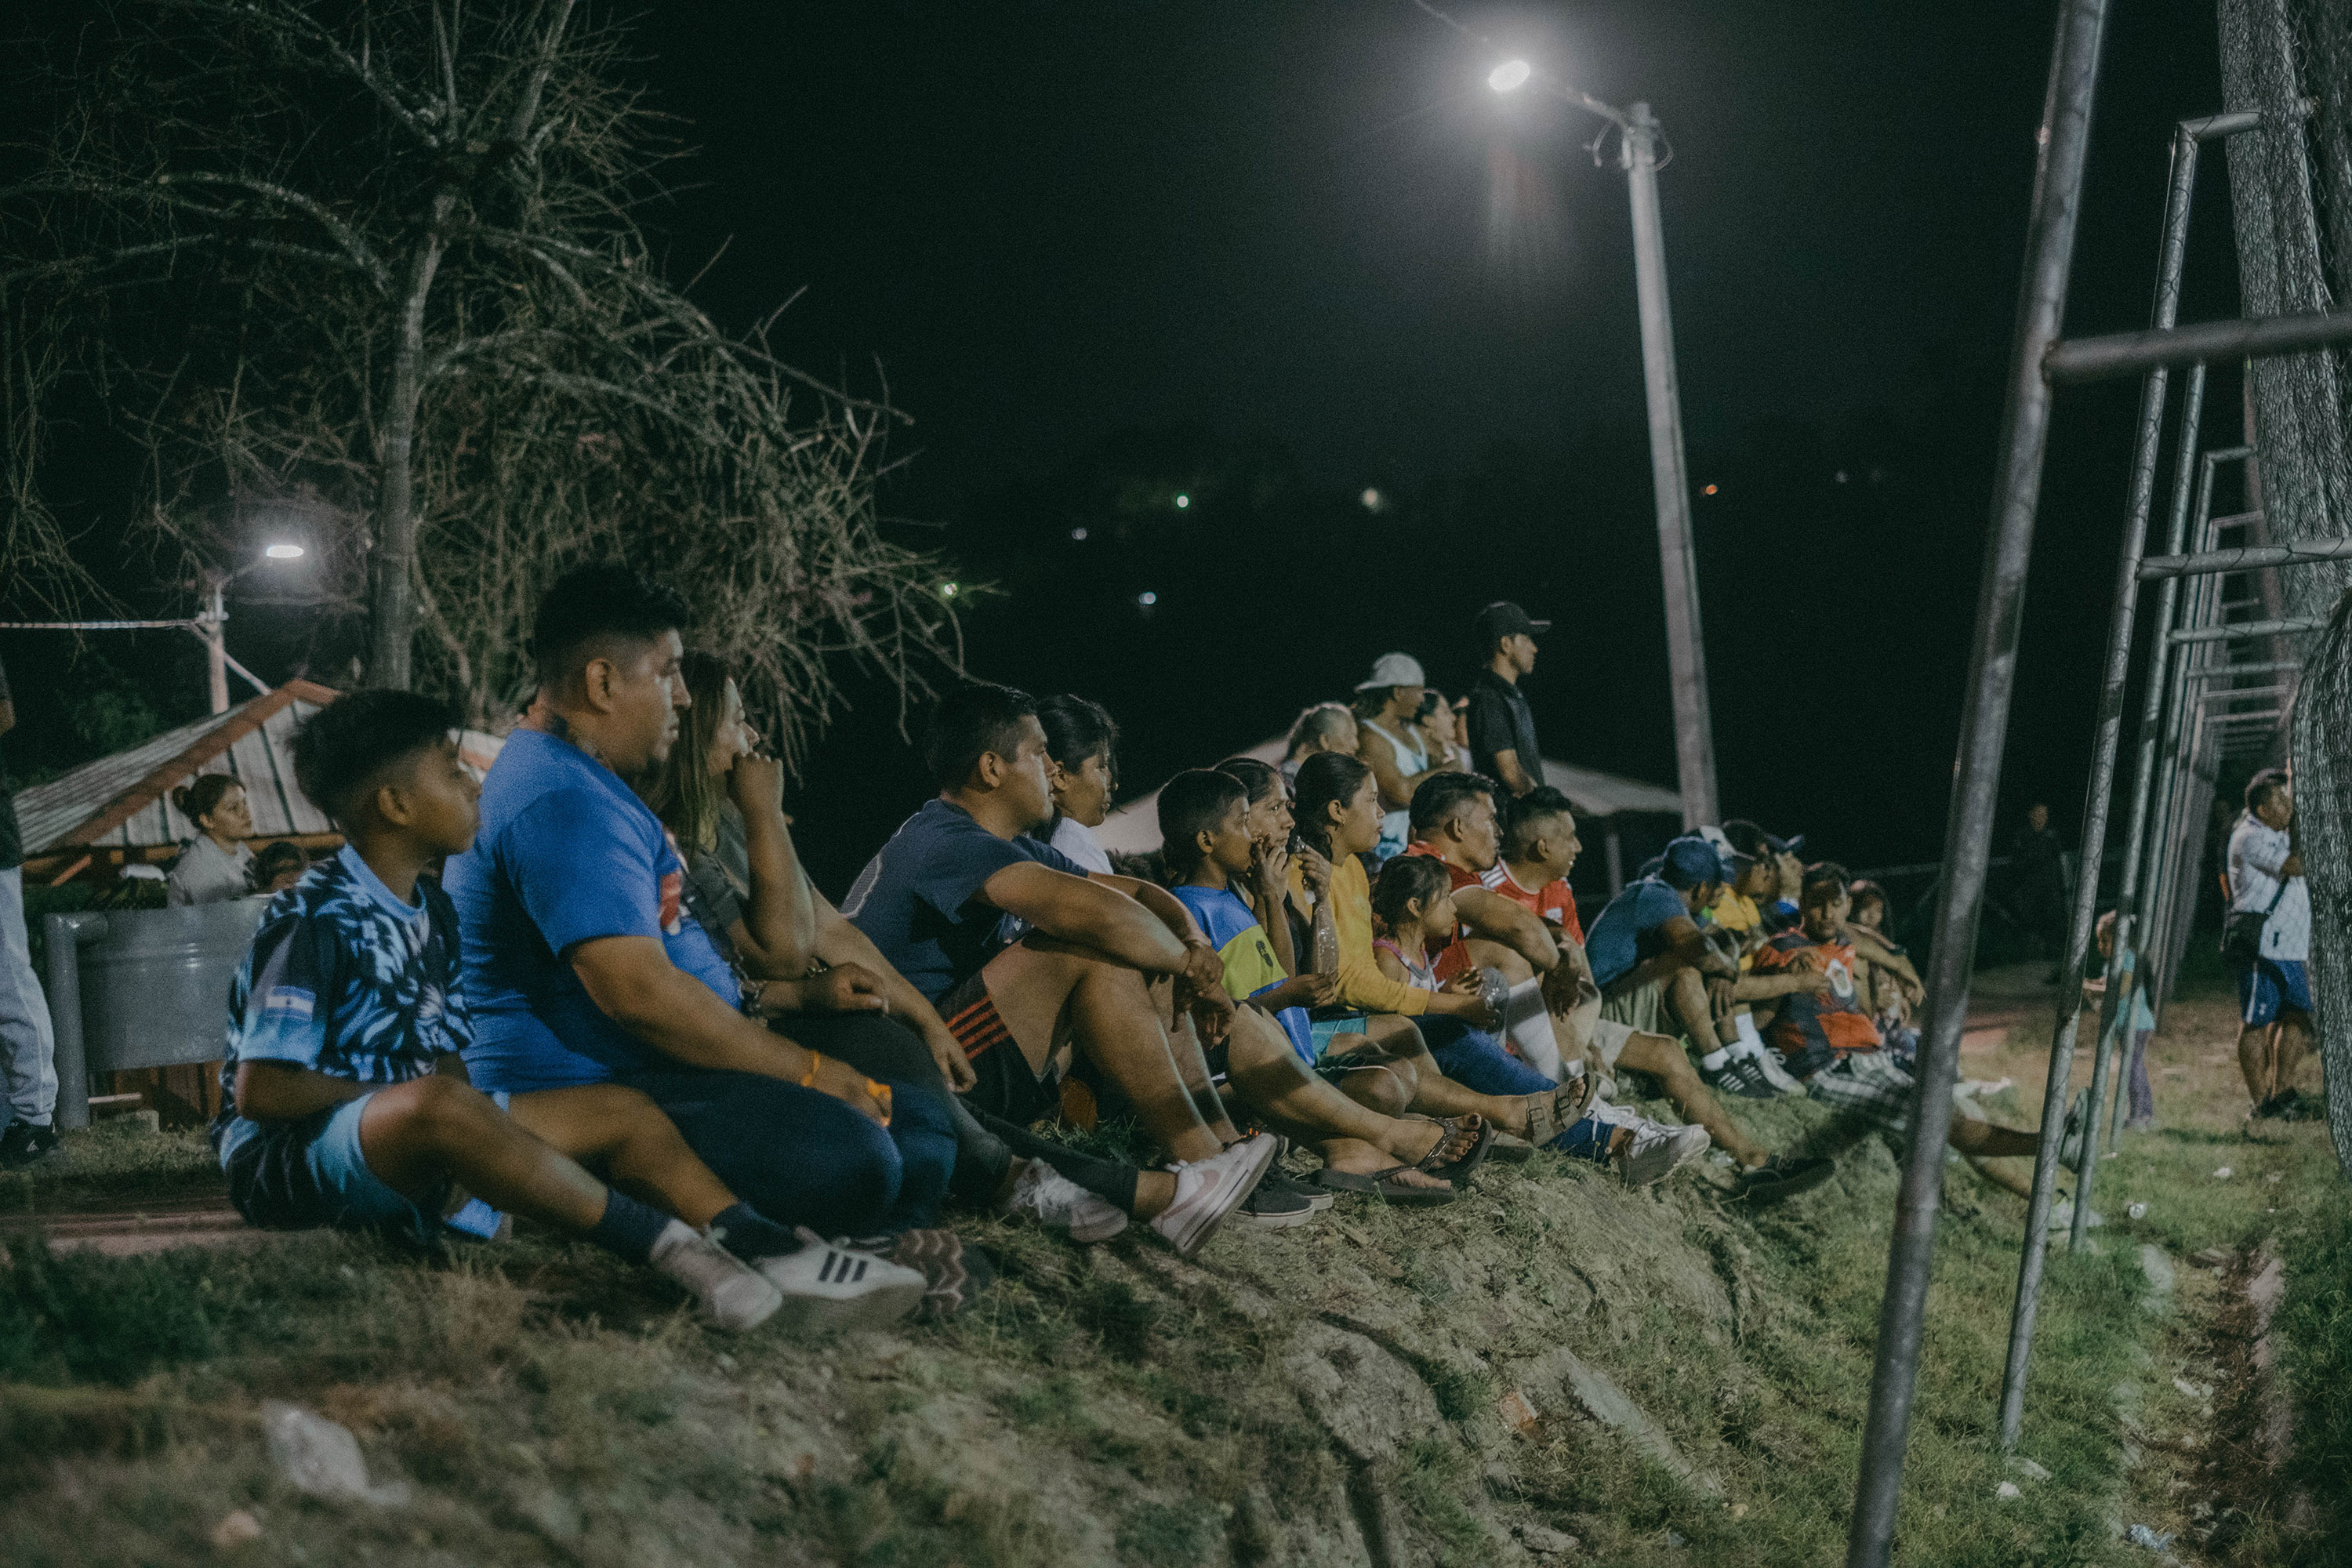 Familias completas de La Campanera asistieron a la cancha para ver la final de fútbol que se celebró el 19 de febrero. Aún con temor, muchos preguntaban para qué eran las fotografías o actuaban con algún recelo.